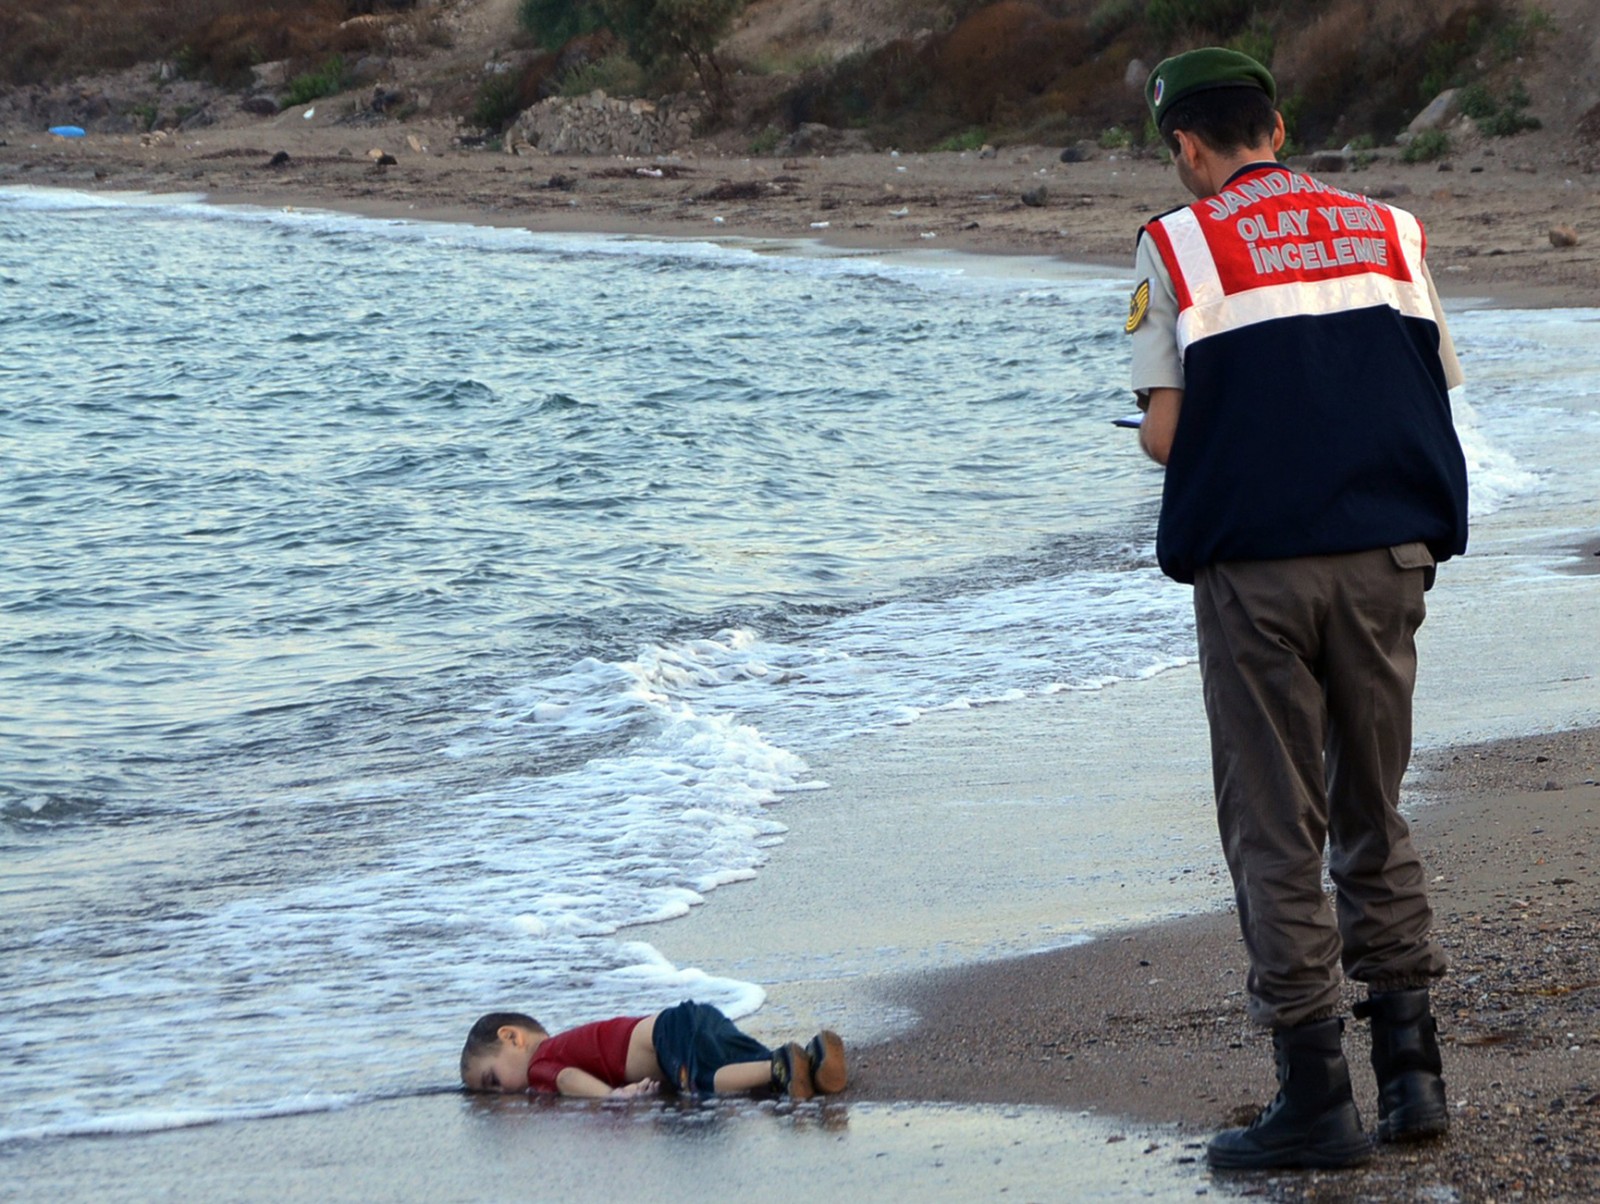 גופתו של איילן כורדי בן ה-3, שיחד עם משפחתו ברחו ממלחמת האזרחים בסוריה, על חוף הים בטורקיה, לאחר שטבע בעת ניסיון להגיע ליוון. ספטמבר 2015. (צילום: סוכנות AP).